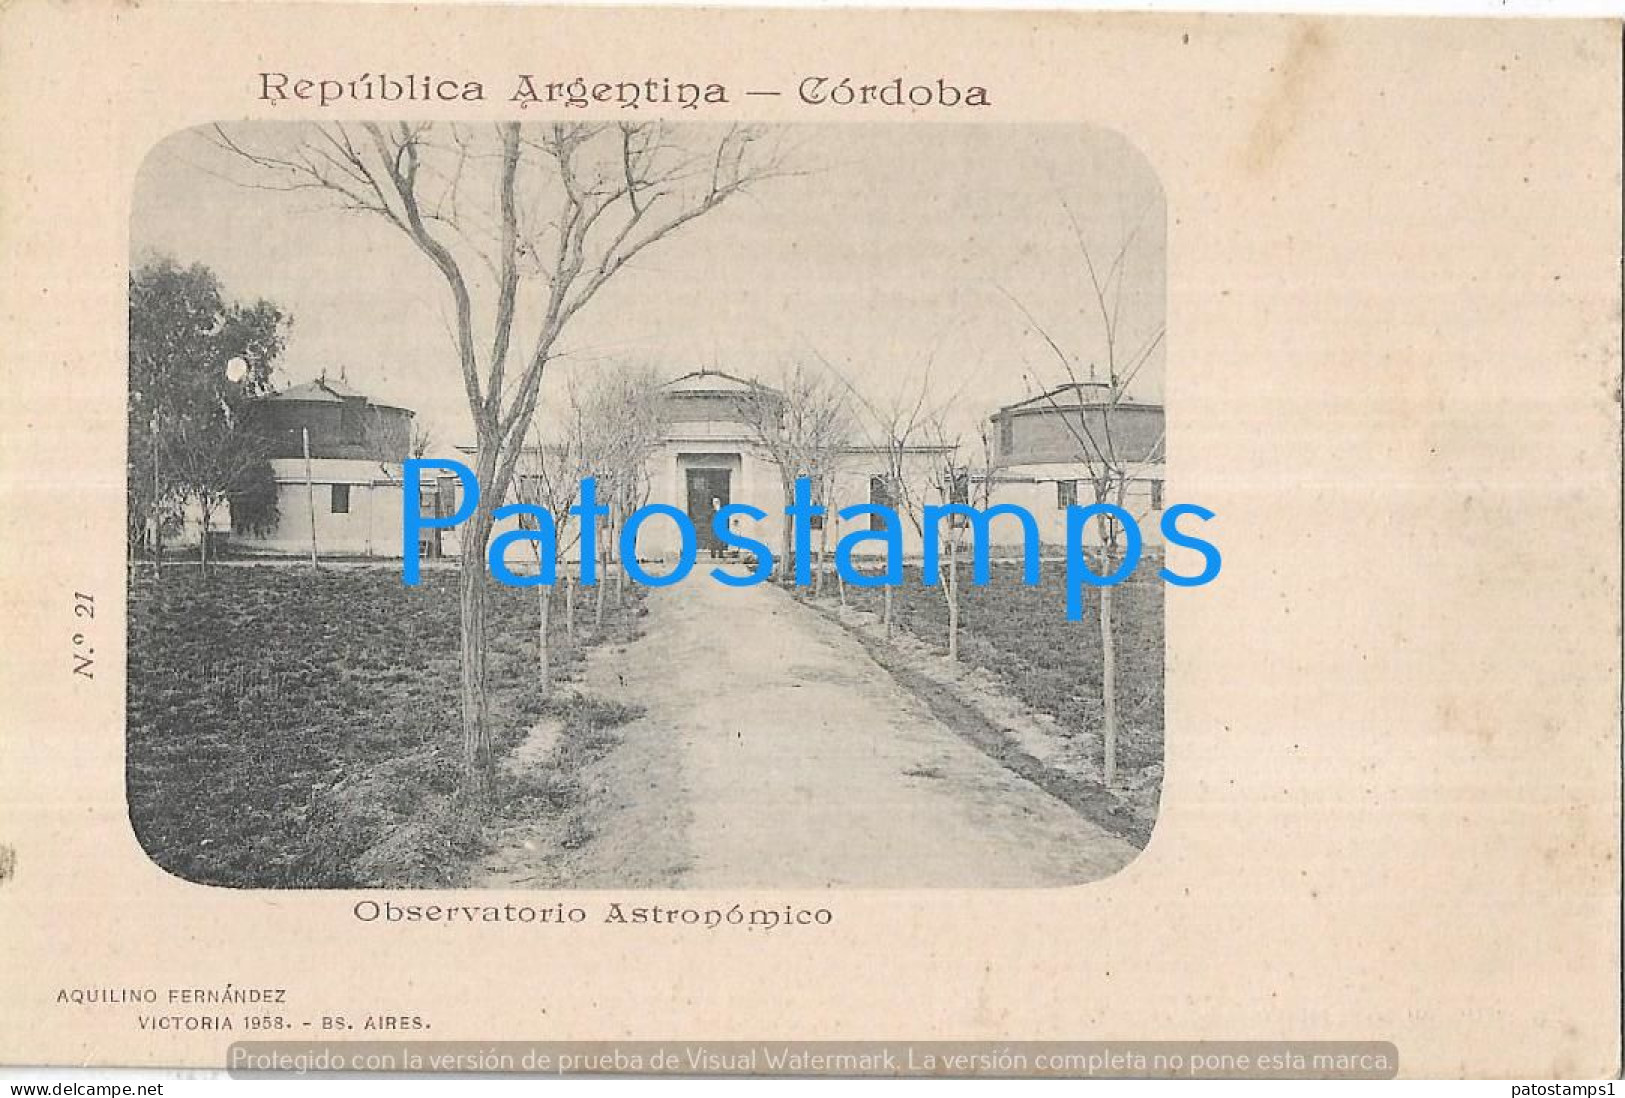 227293 ARGENTINA CORDOBA OBSERVATORIO ASTRONOMICO SPOTTED COLECCION AQUILINO FERNANDEZ POSTCARD - Argentine